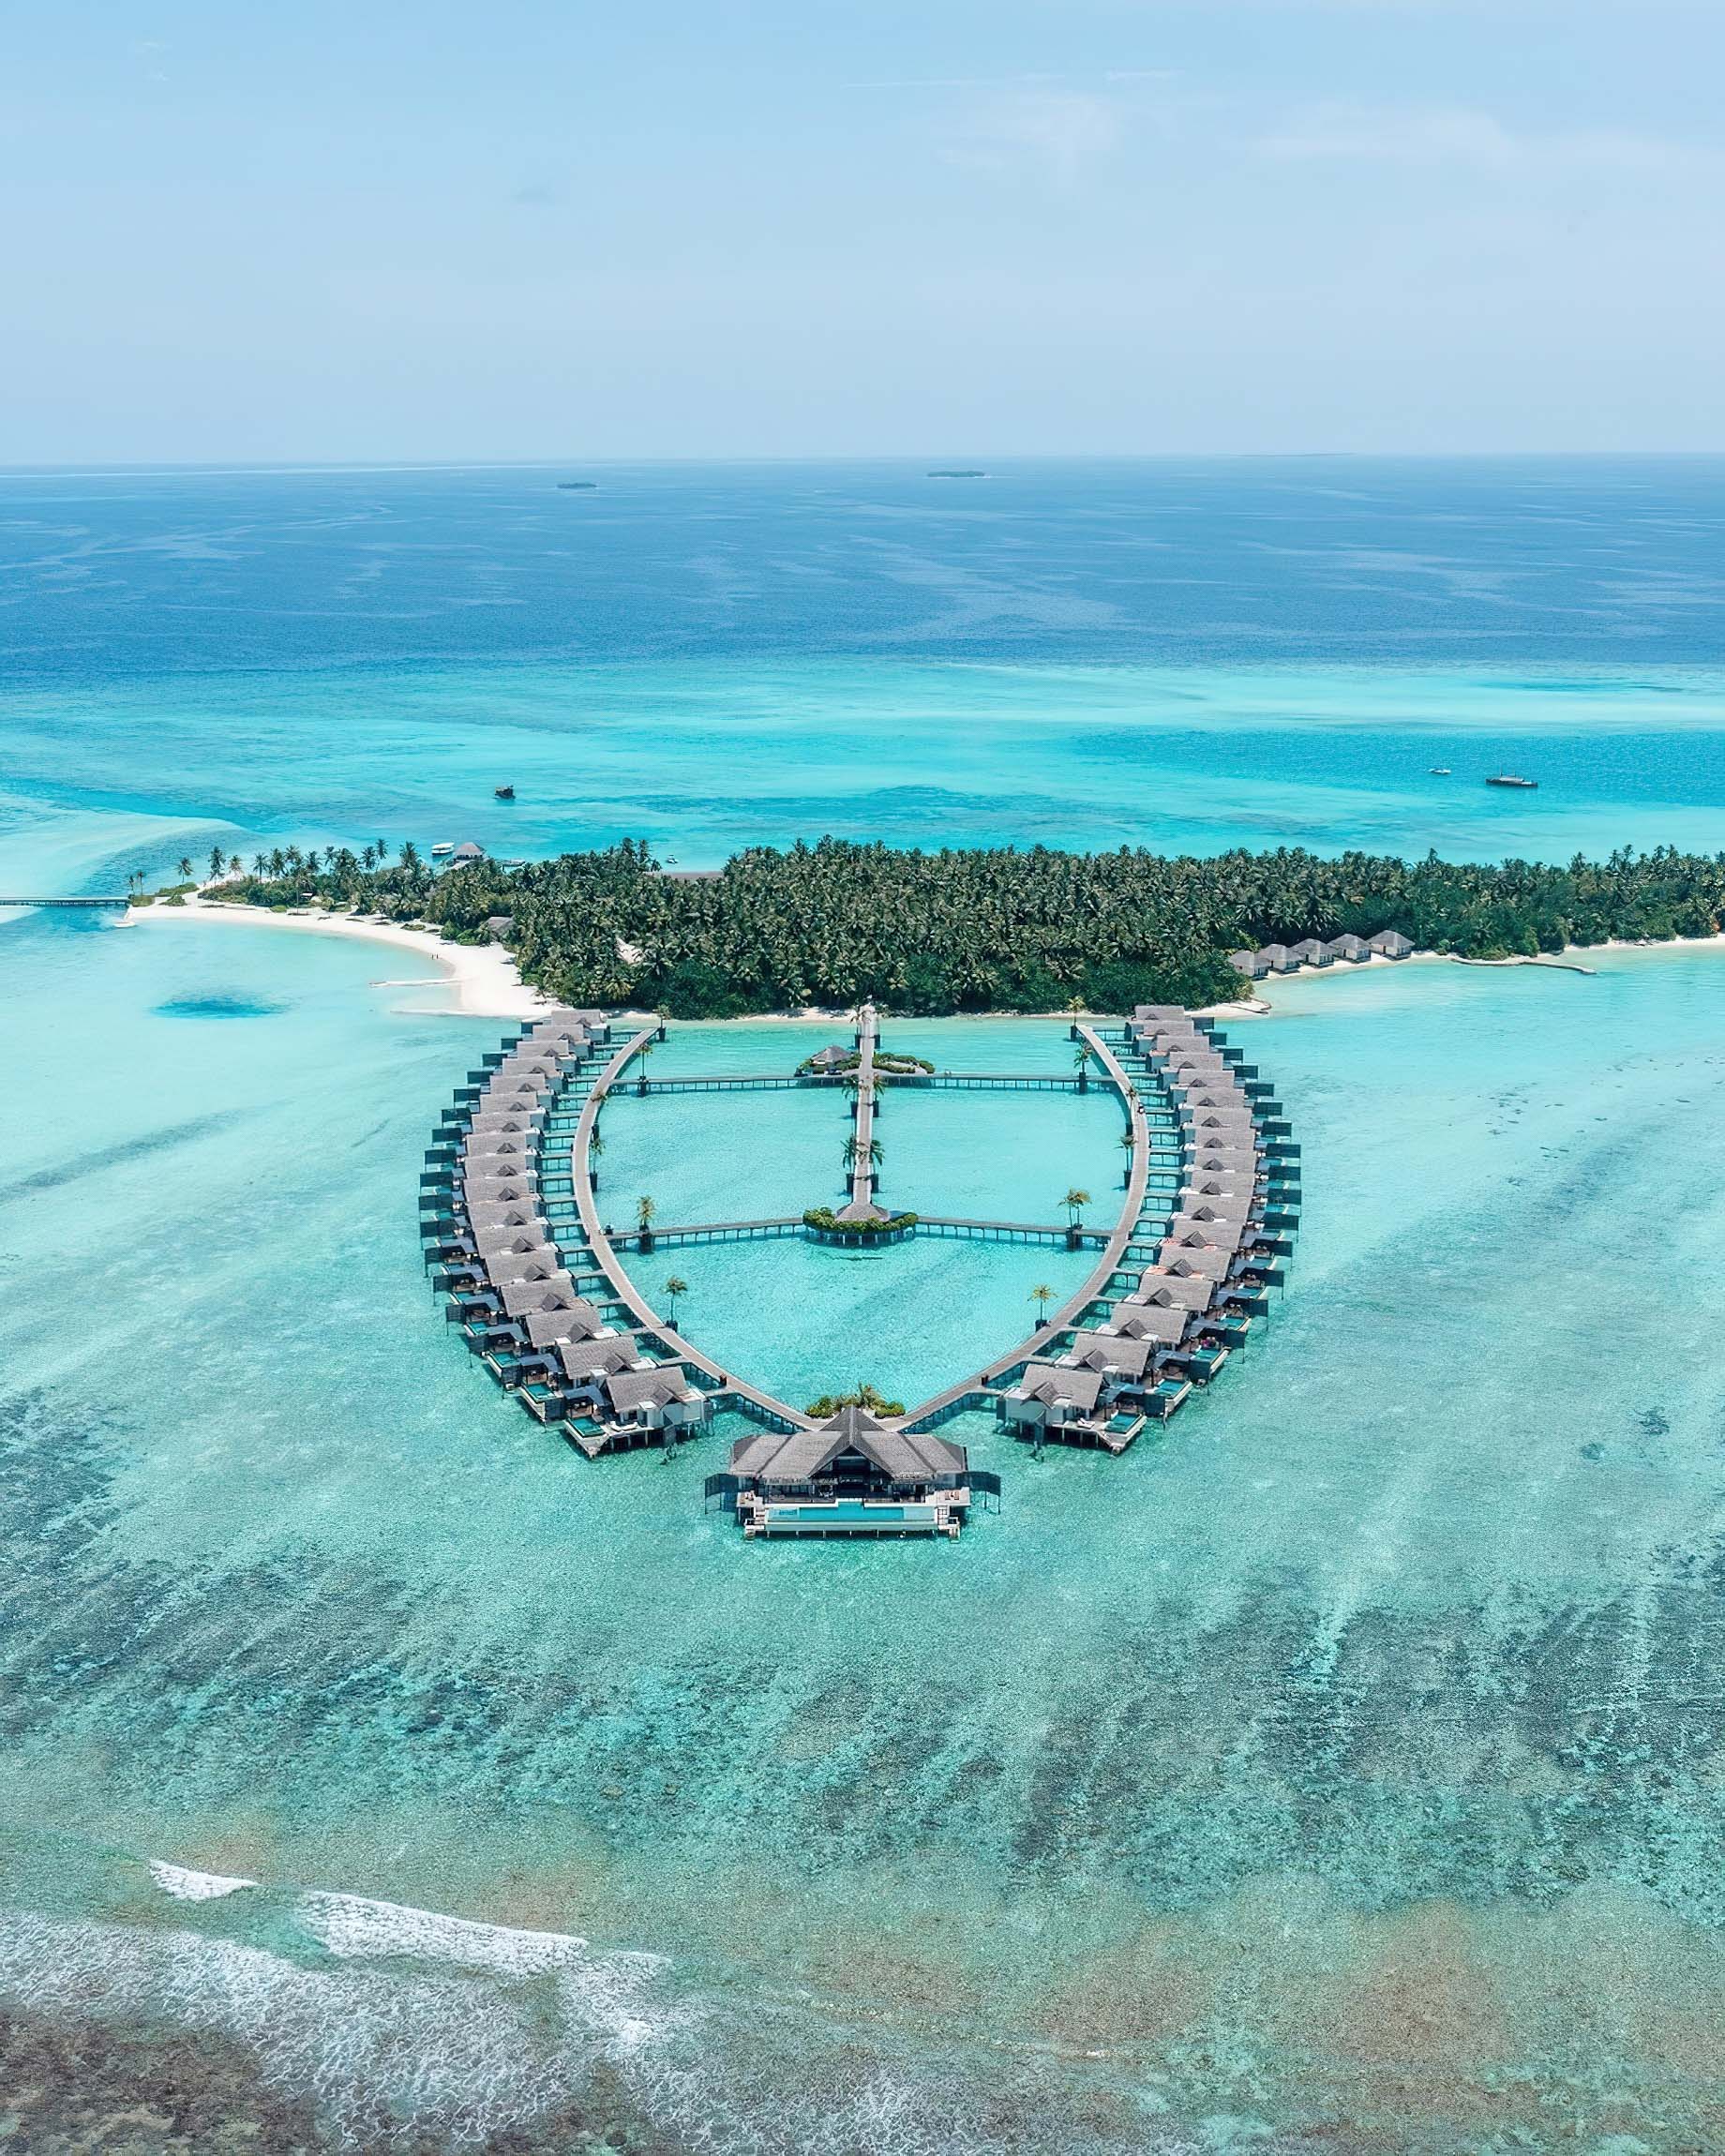 Niyama Private Islands Maldives Resort – Dhaalu Atoll, Maldives – Aerial View